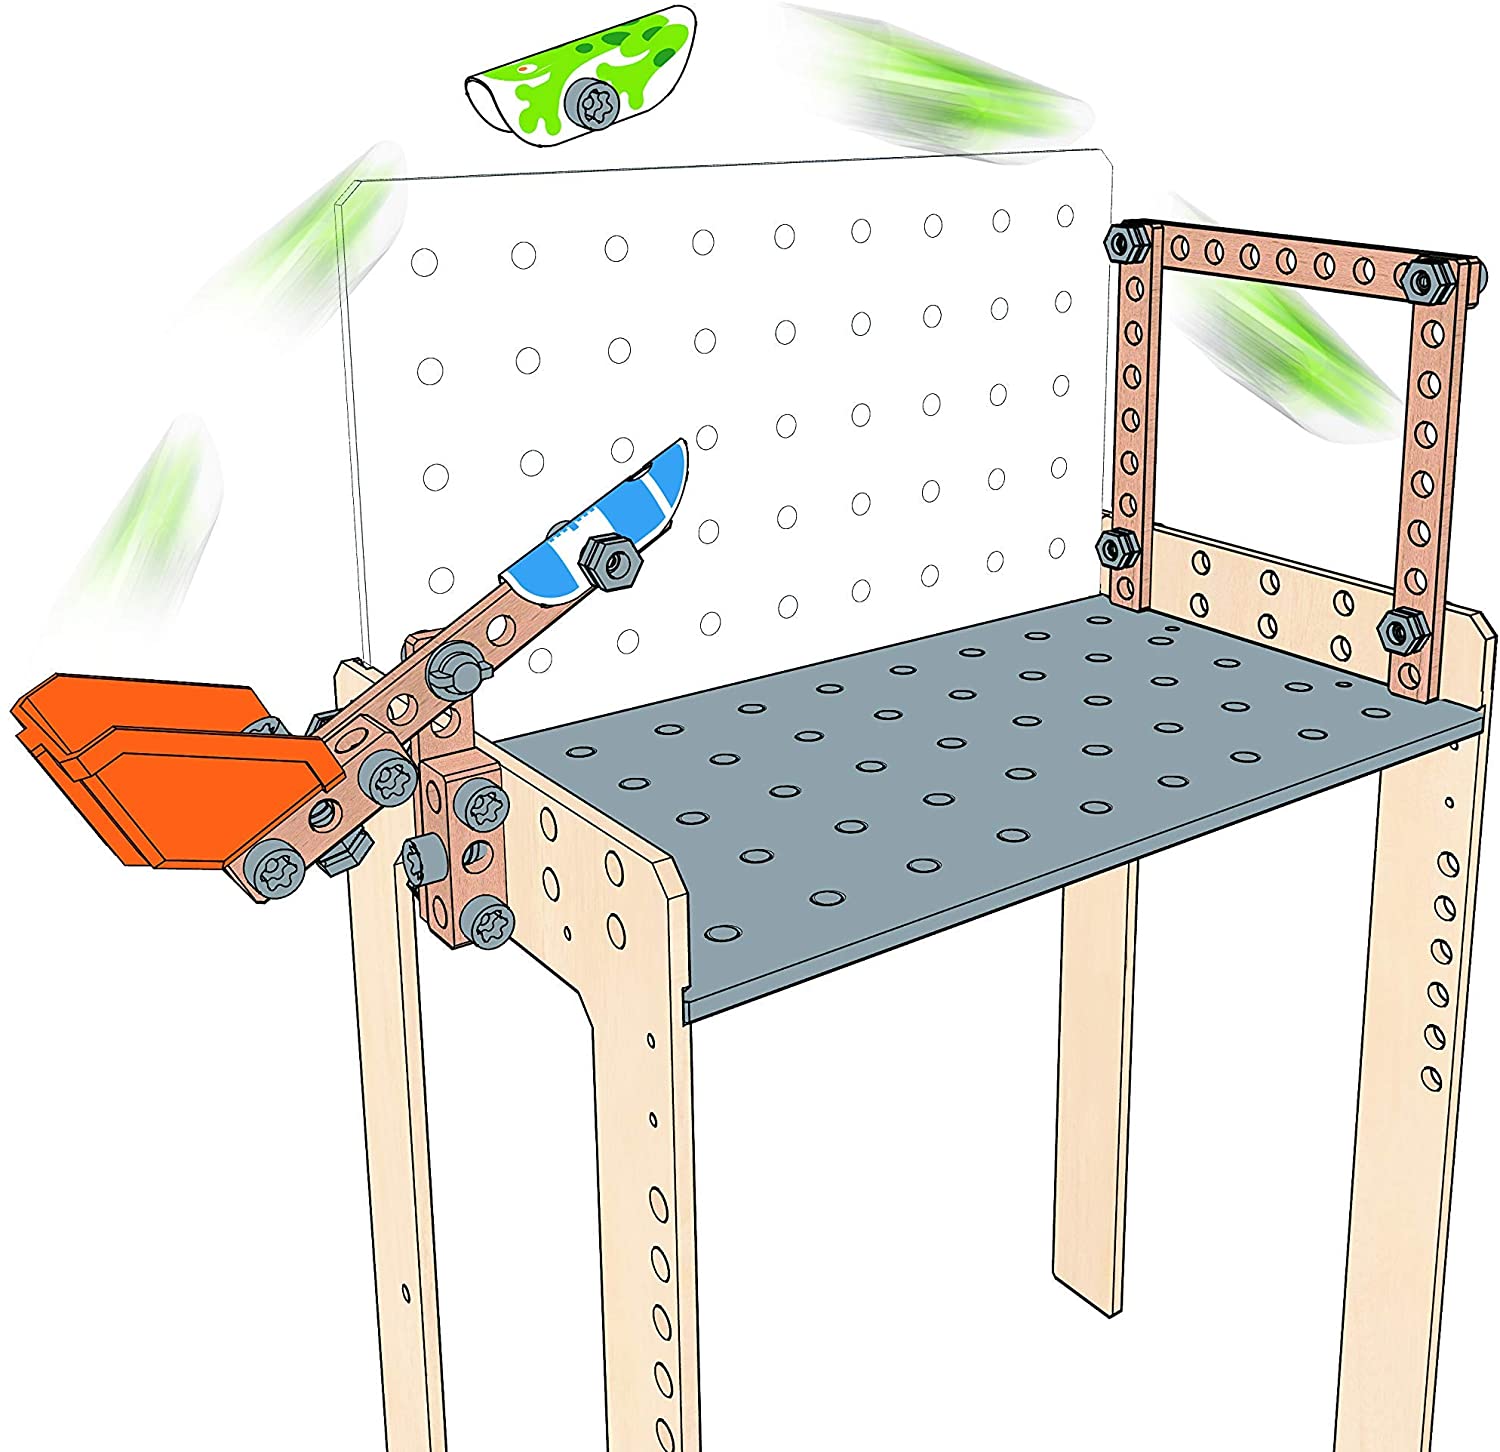 Hape Deluxe Scientific Workbench | Wooden Inventor’s Experiment Building Set, 79 Piece Workshop for Kids